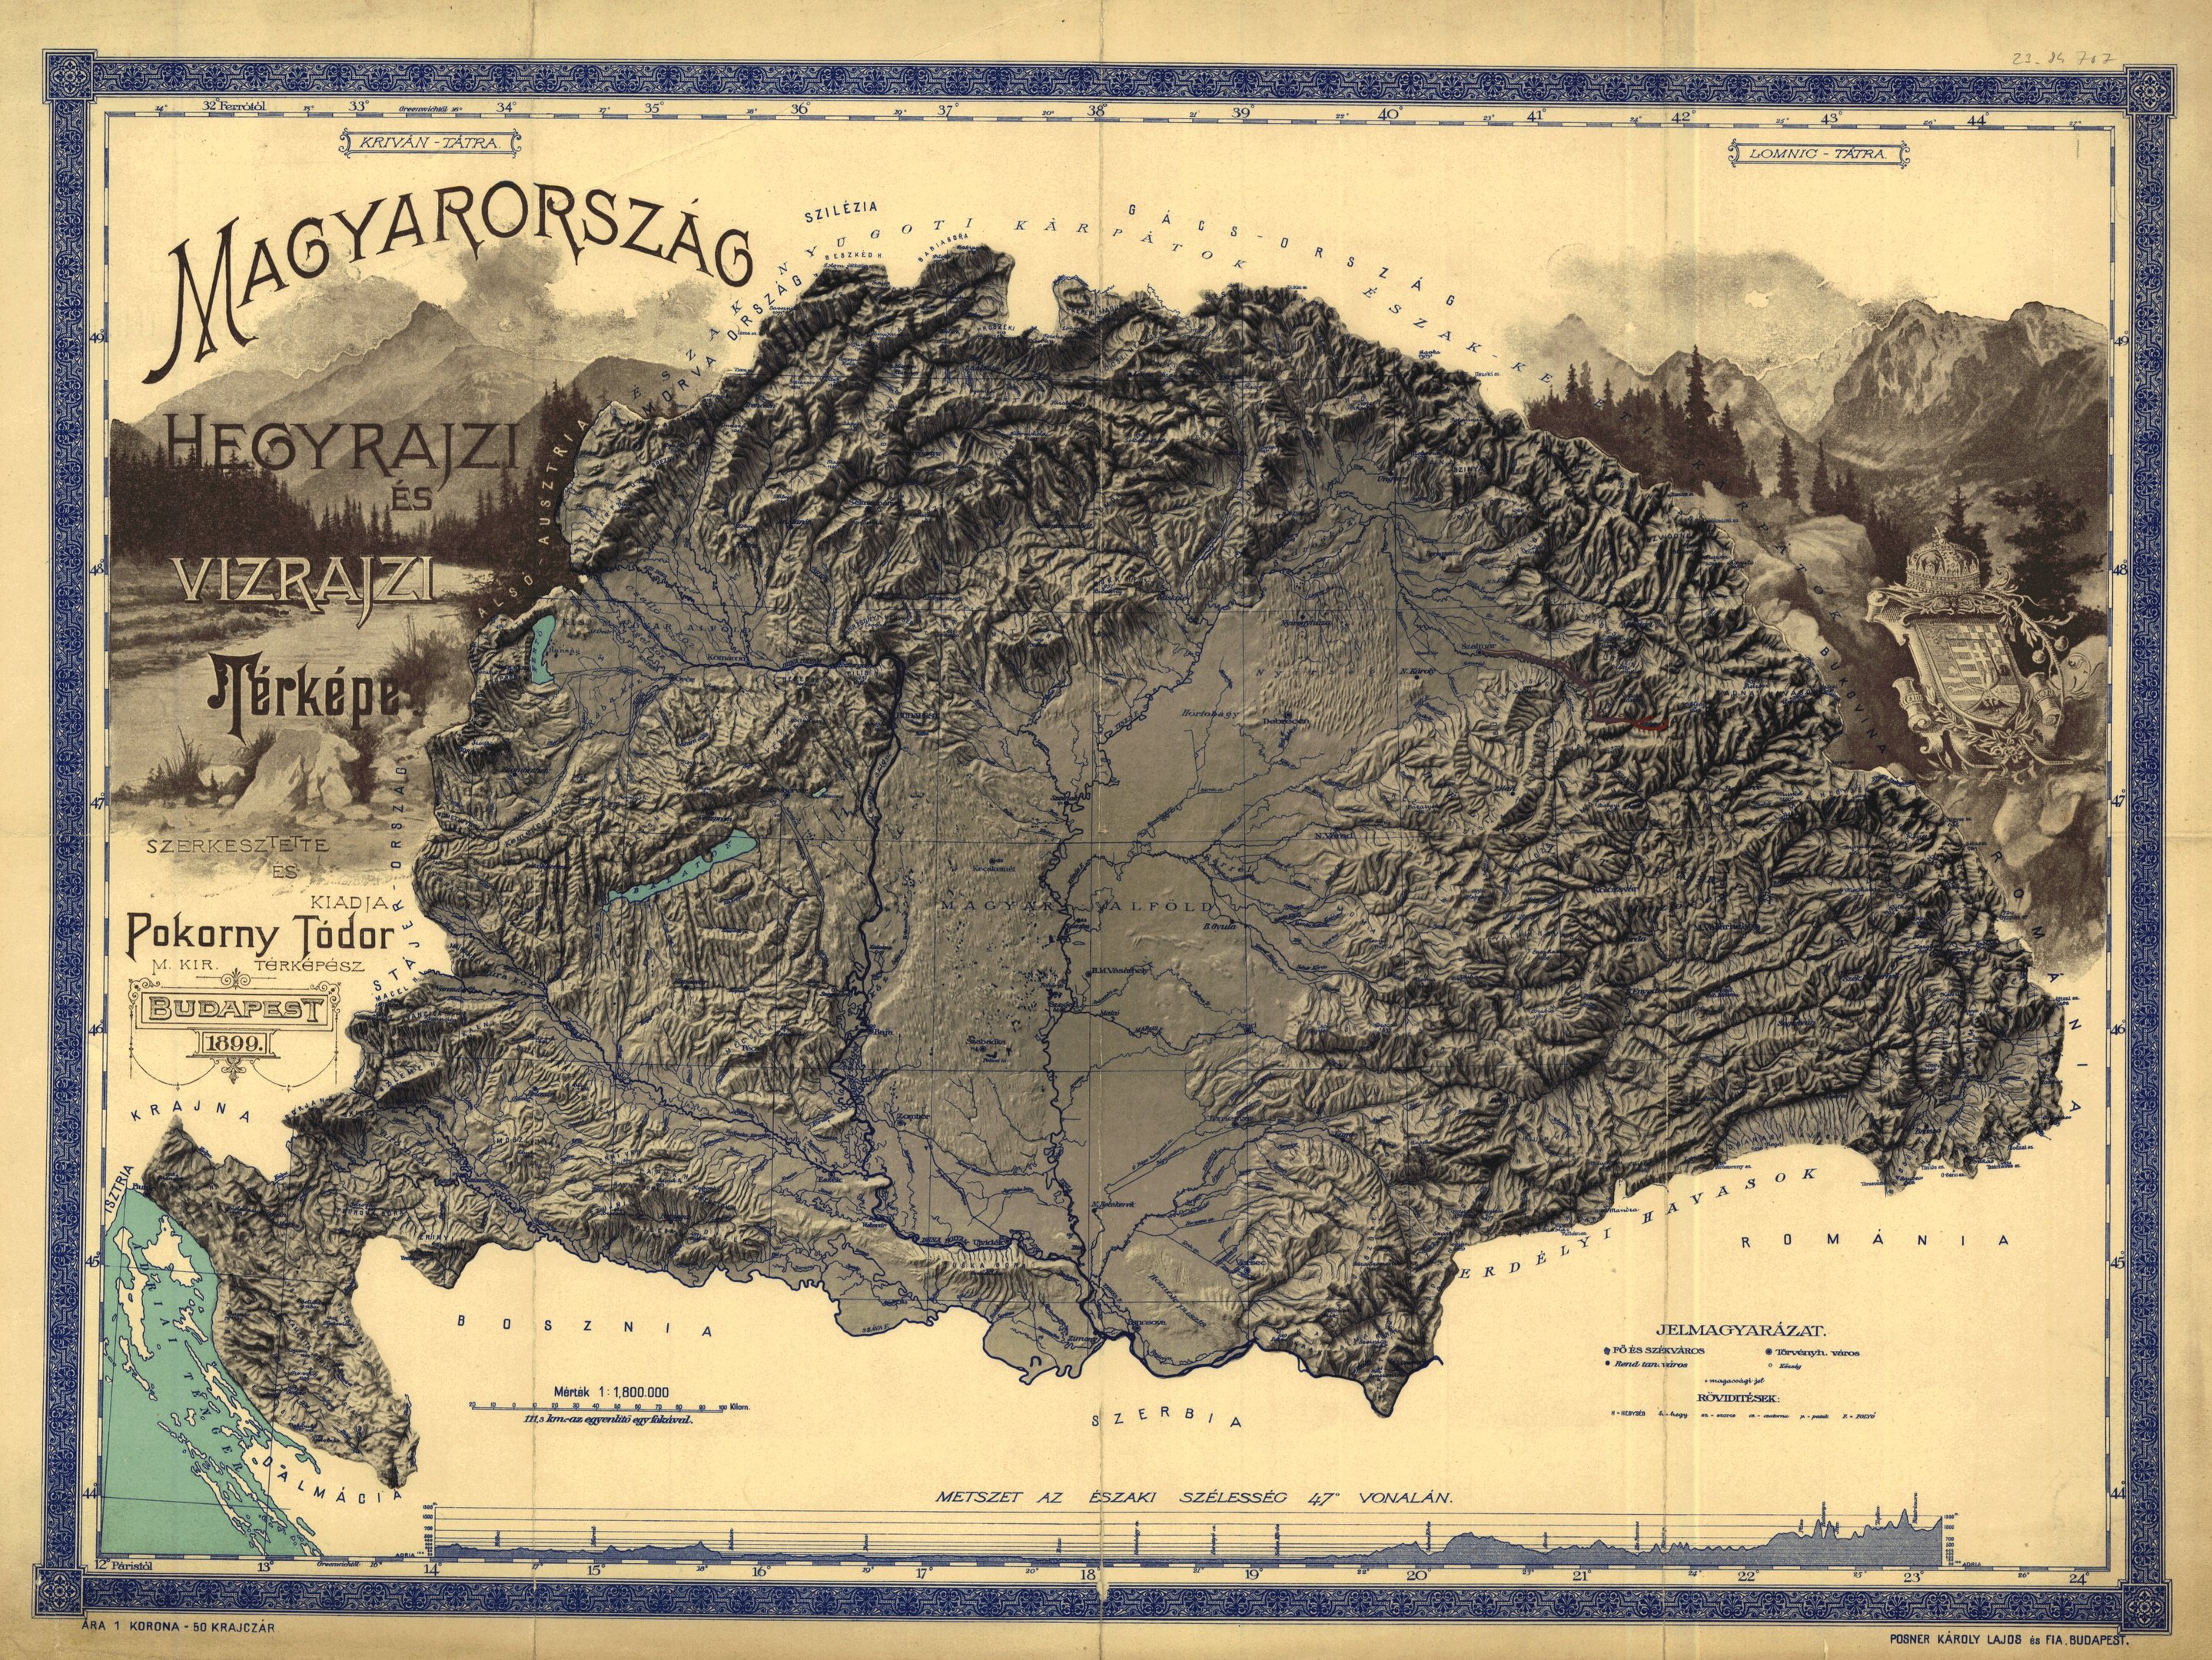 Magyarország hegyrajzi és vízrajzi térképe, 1899 (Magyar Környezetvédelmi és Vízügyi Múzeum - Duna Múzeum CC BY-NC-SA)